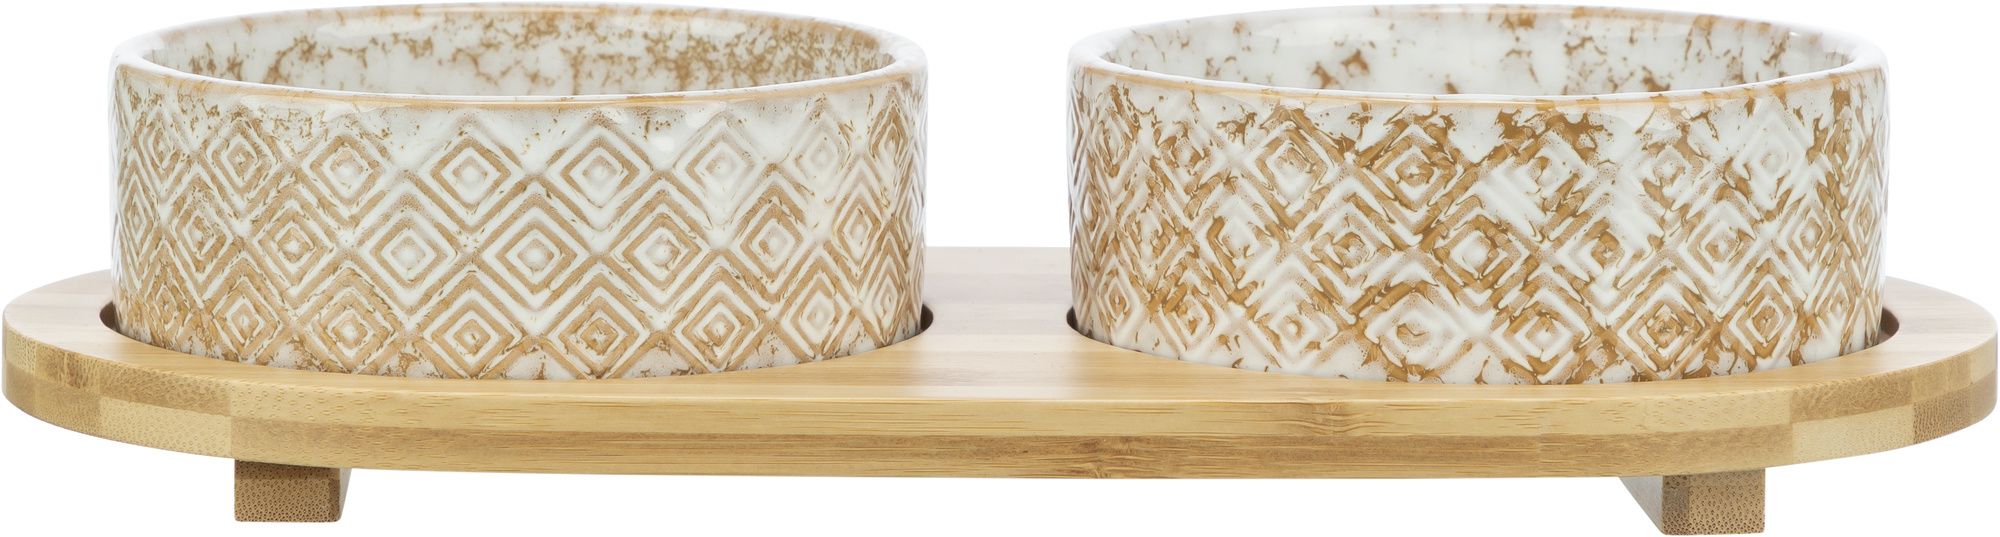 Set de comederos Trixie de cerámica/bambú